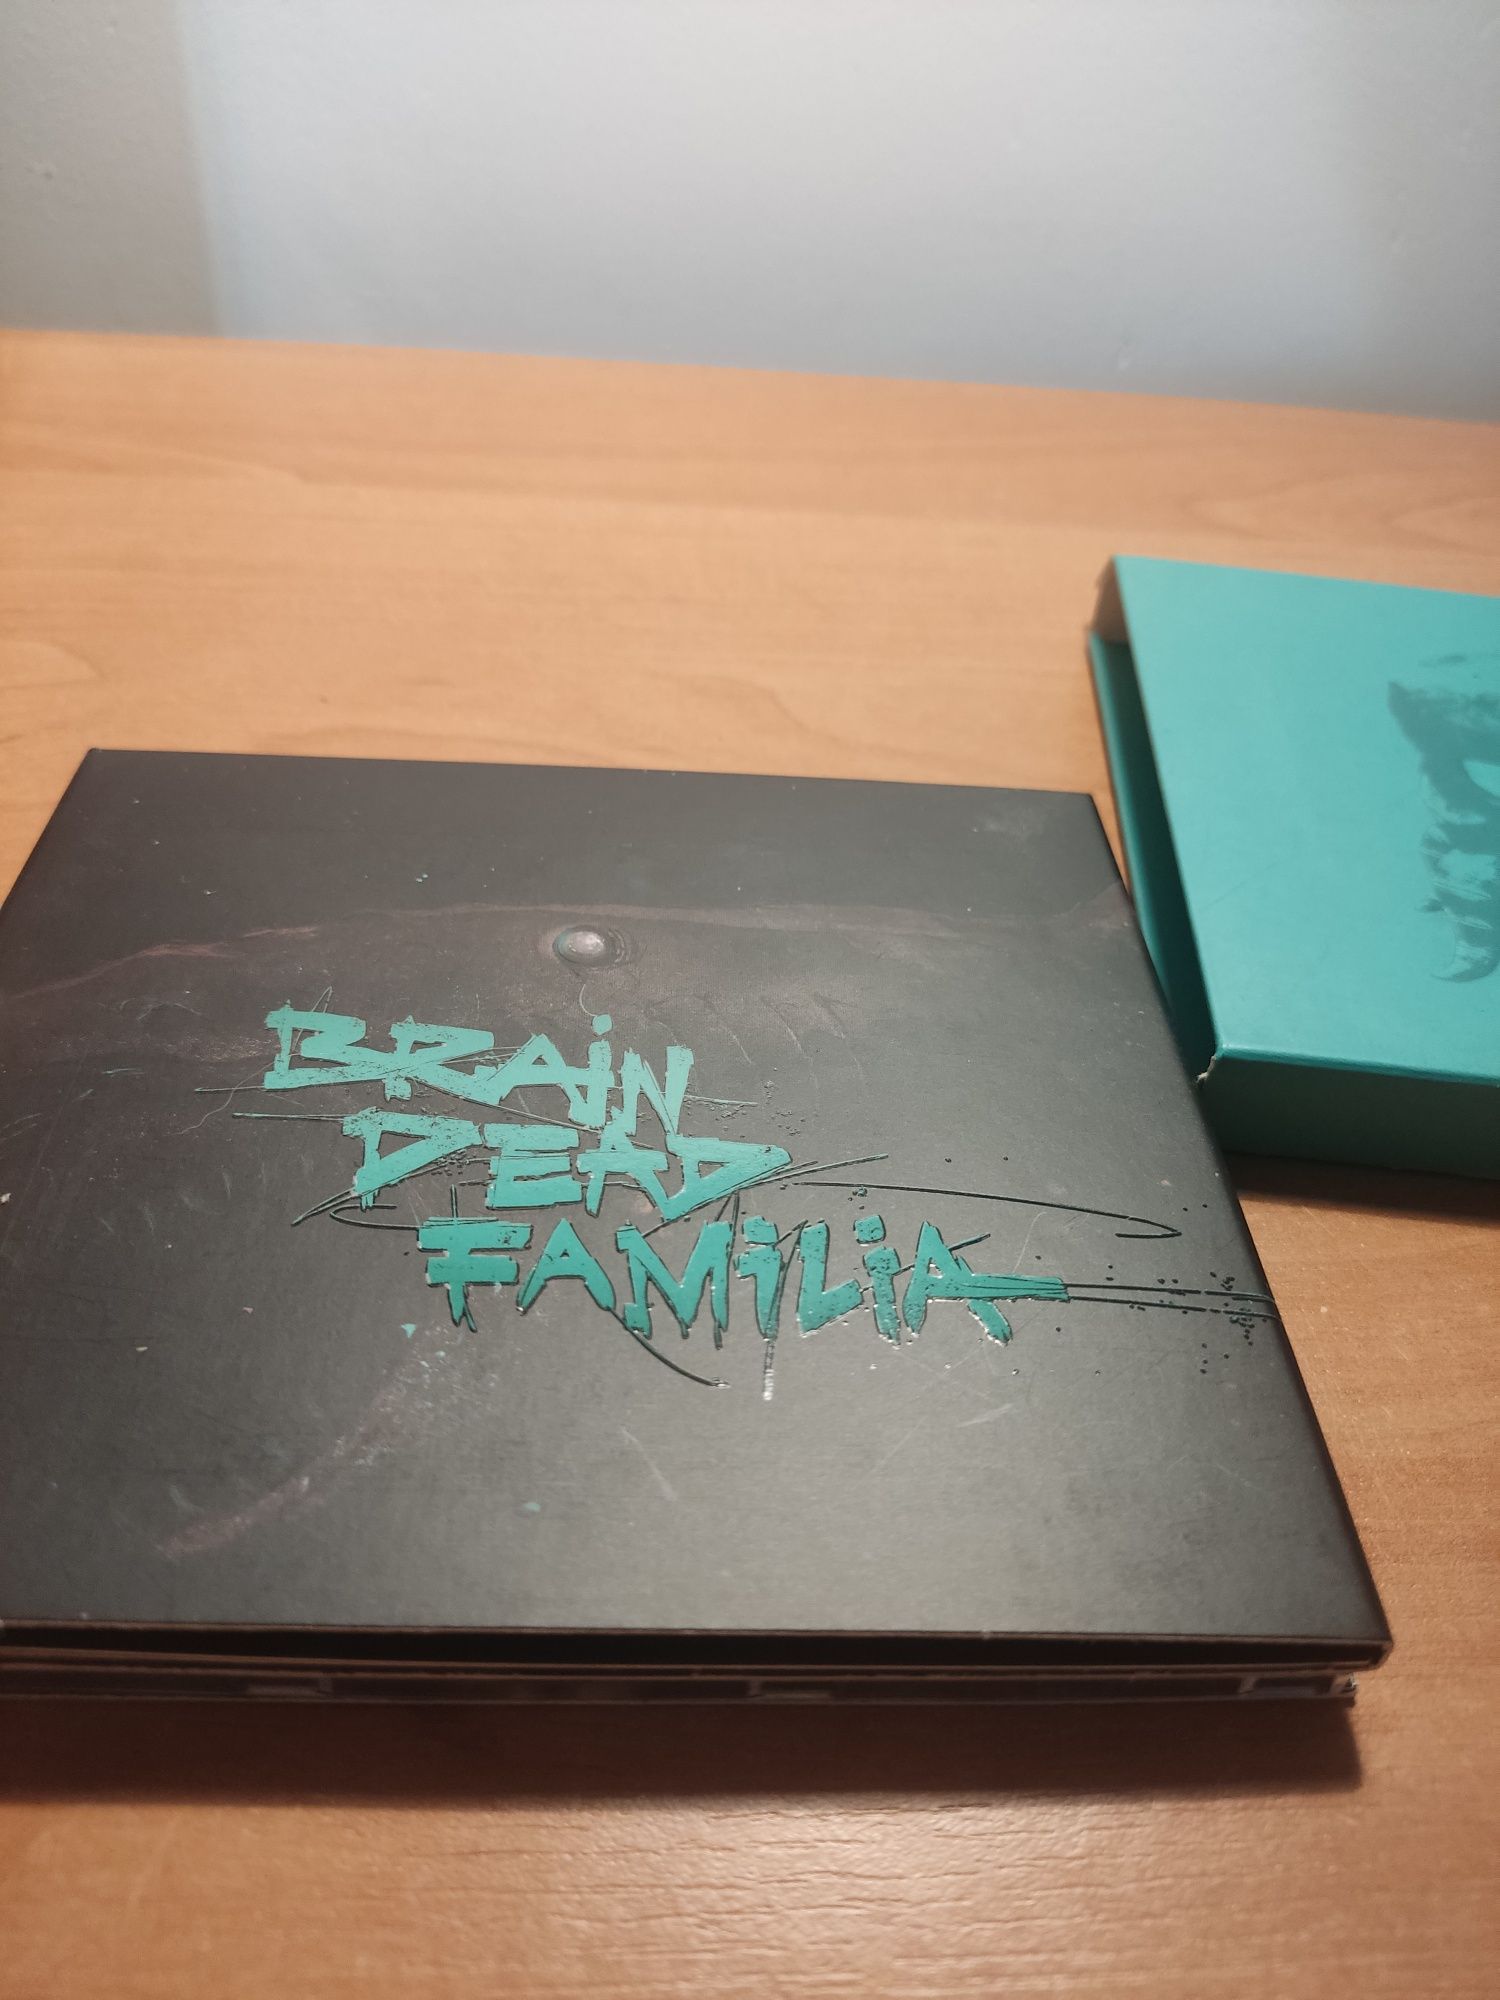 Brain Dead Familia - Słoń album, naklejki